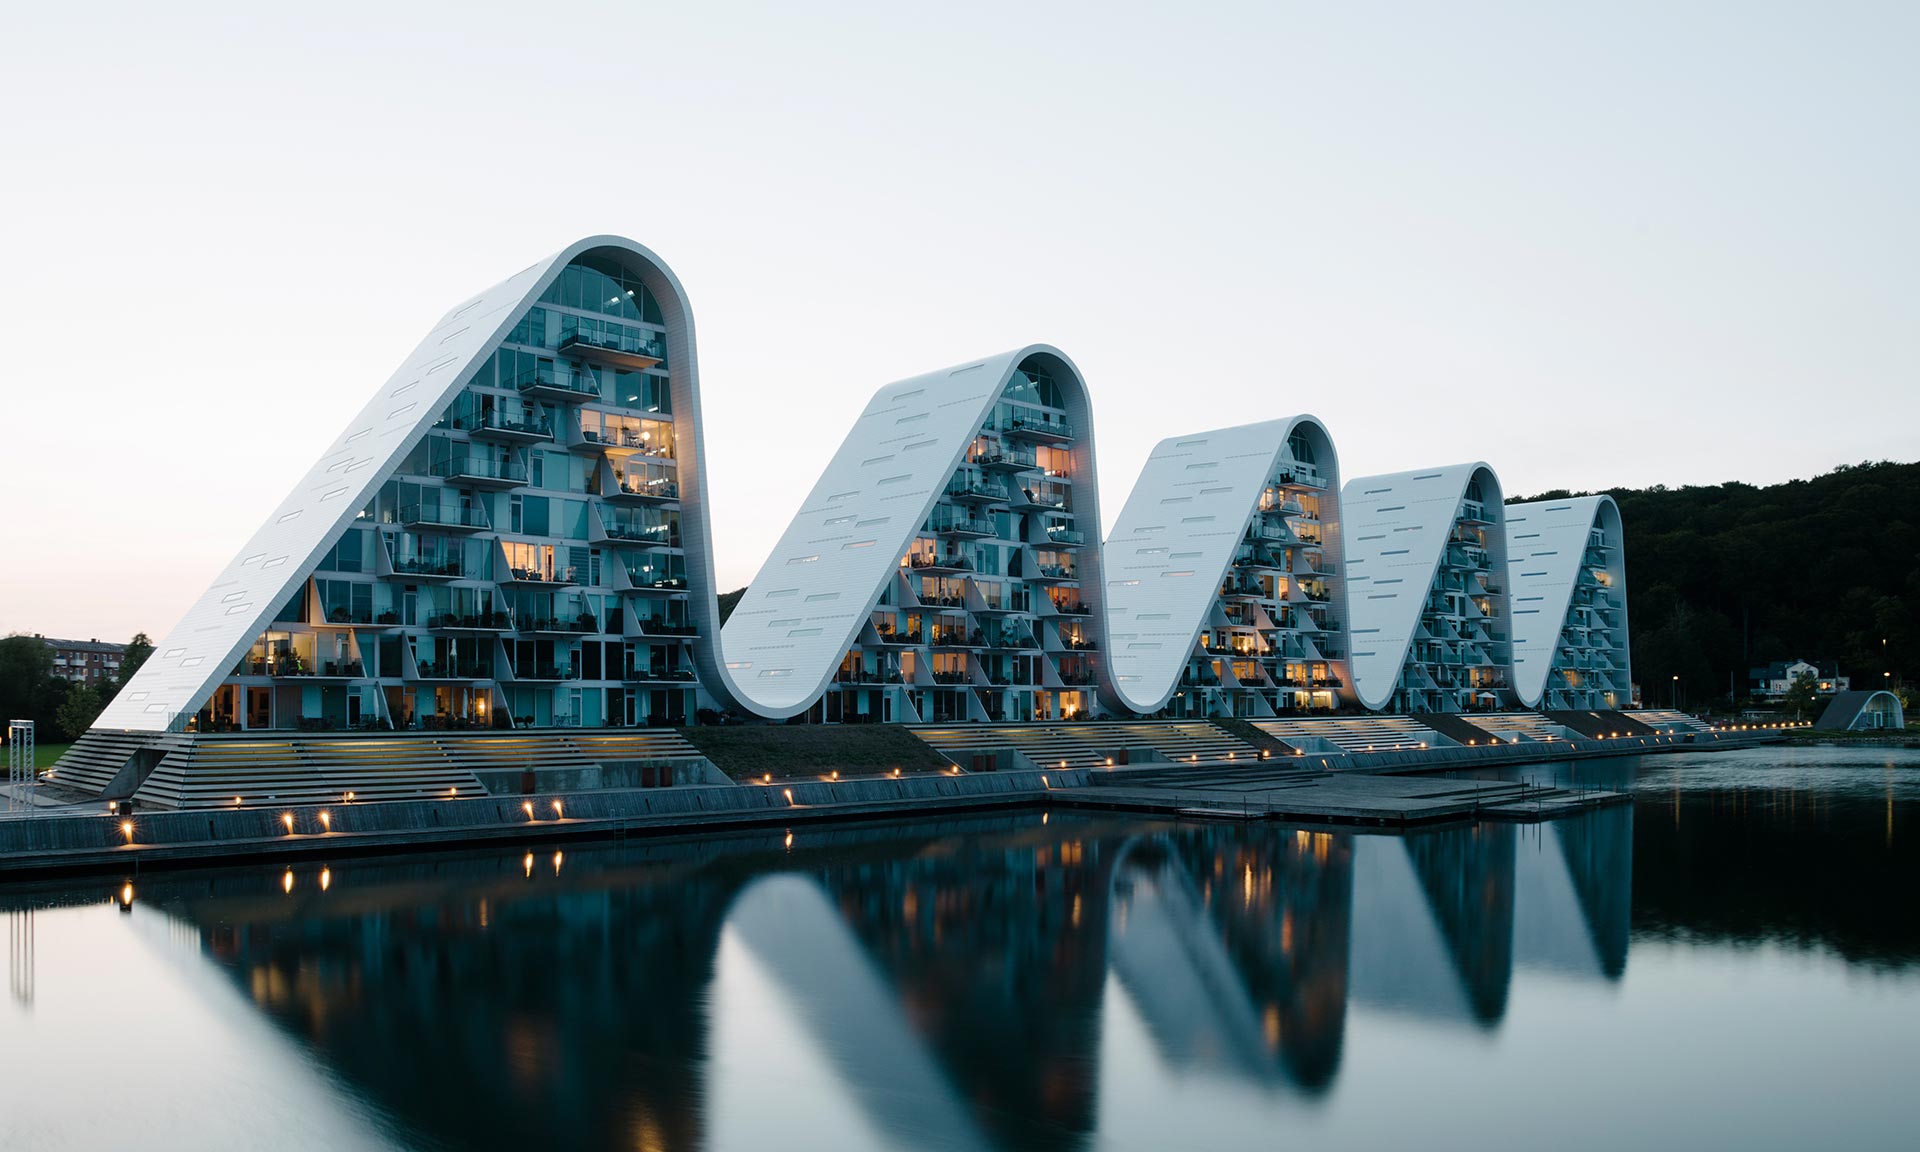 V dánském městě Vejle dokončili bytový dům The Wave s tvarem pěti vln